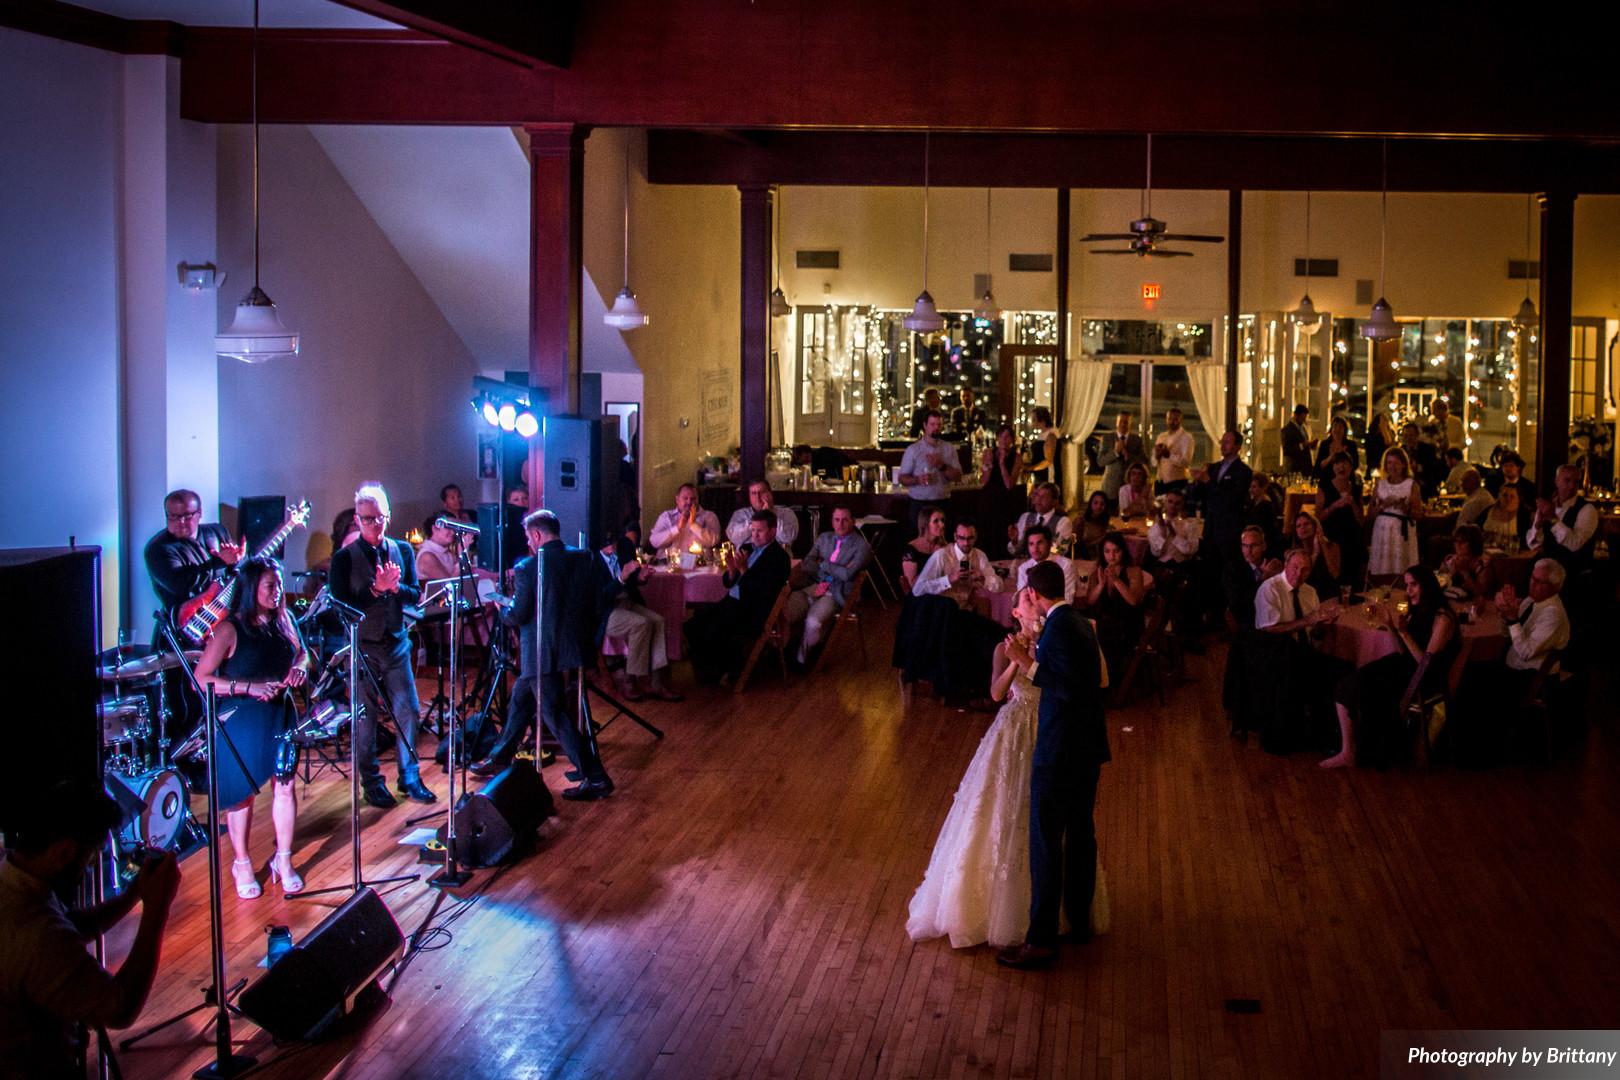 Stoughton WI Wedding Dance Floor Venue